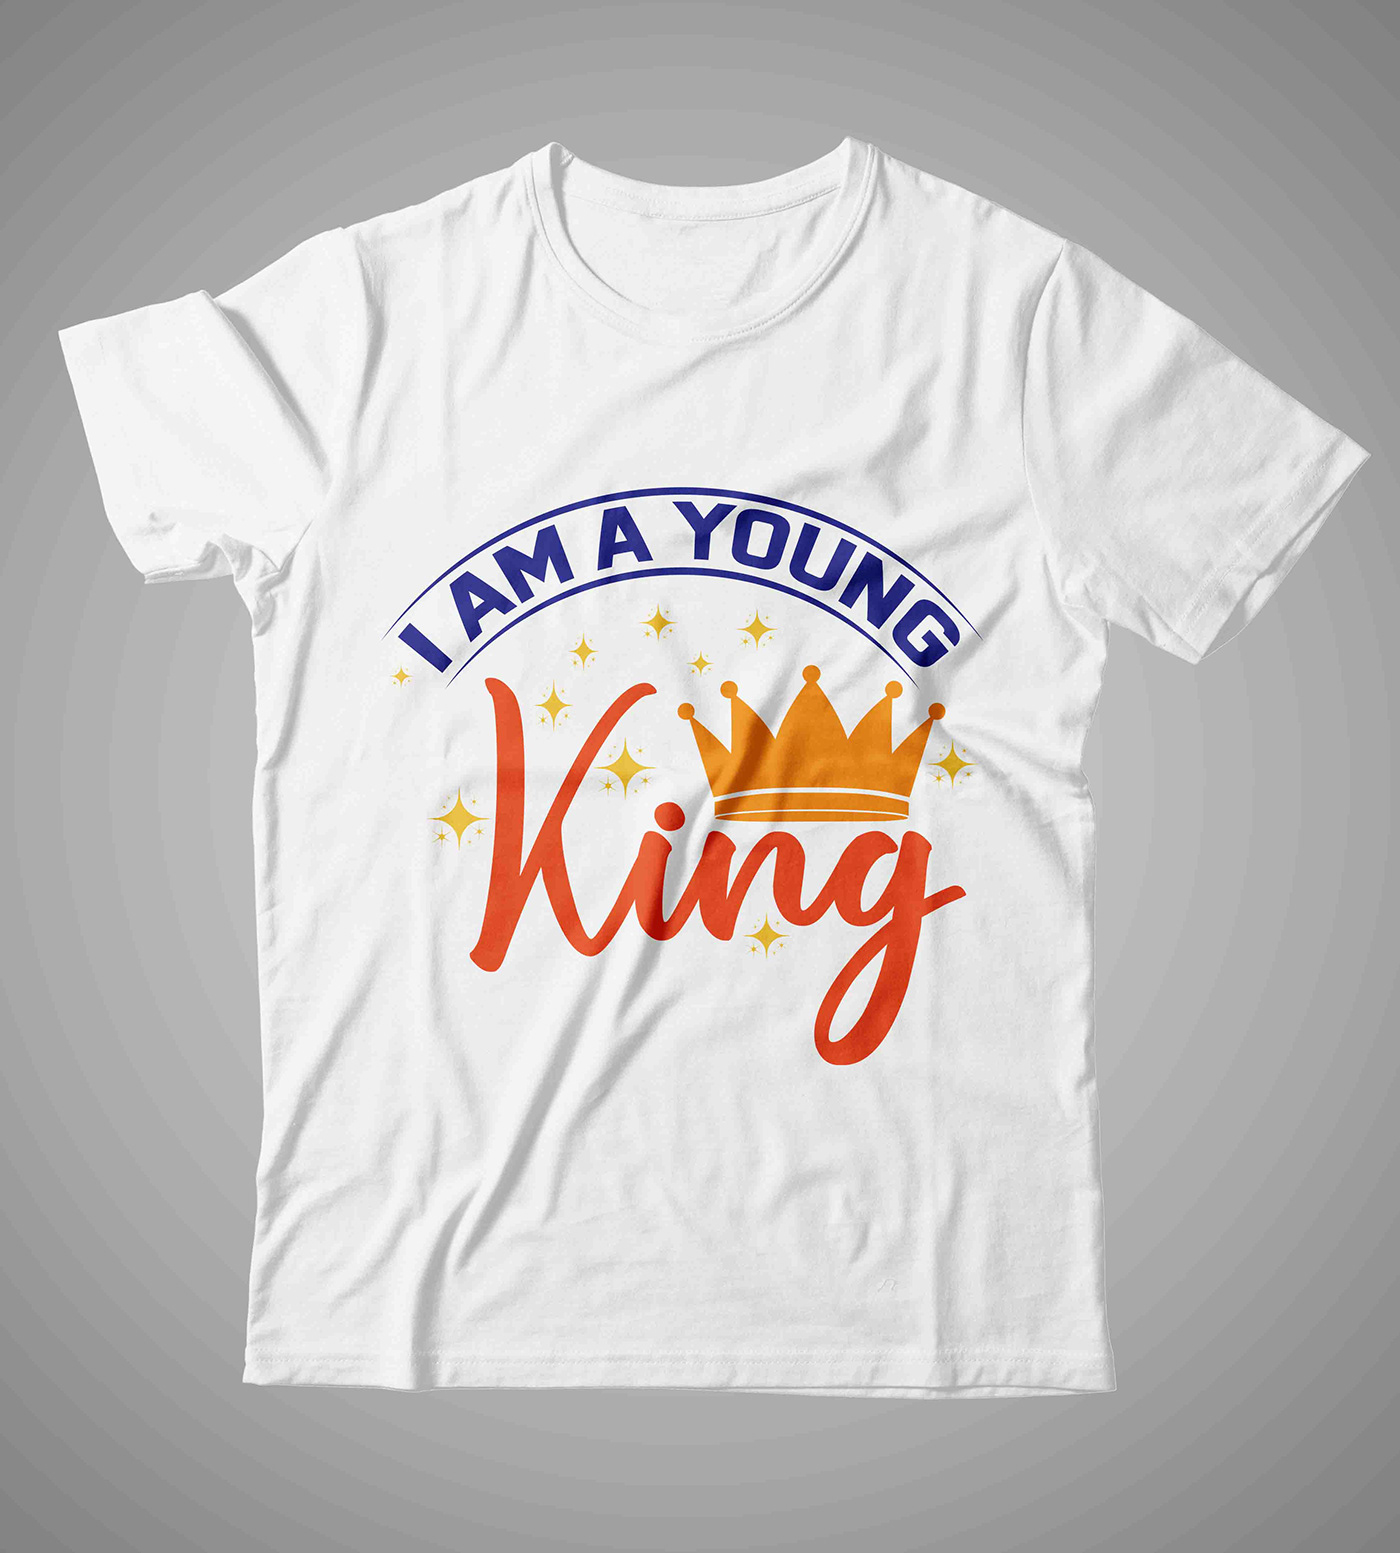 Best t shirt deign King T Shirt Design t shirt design